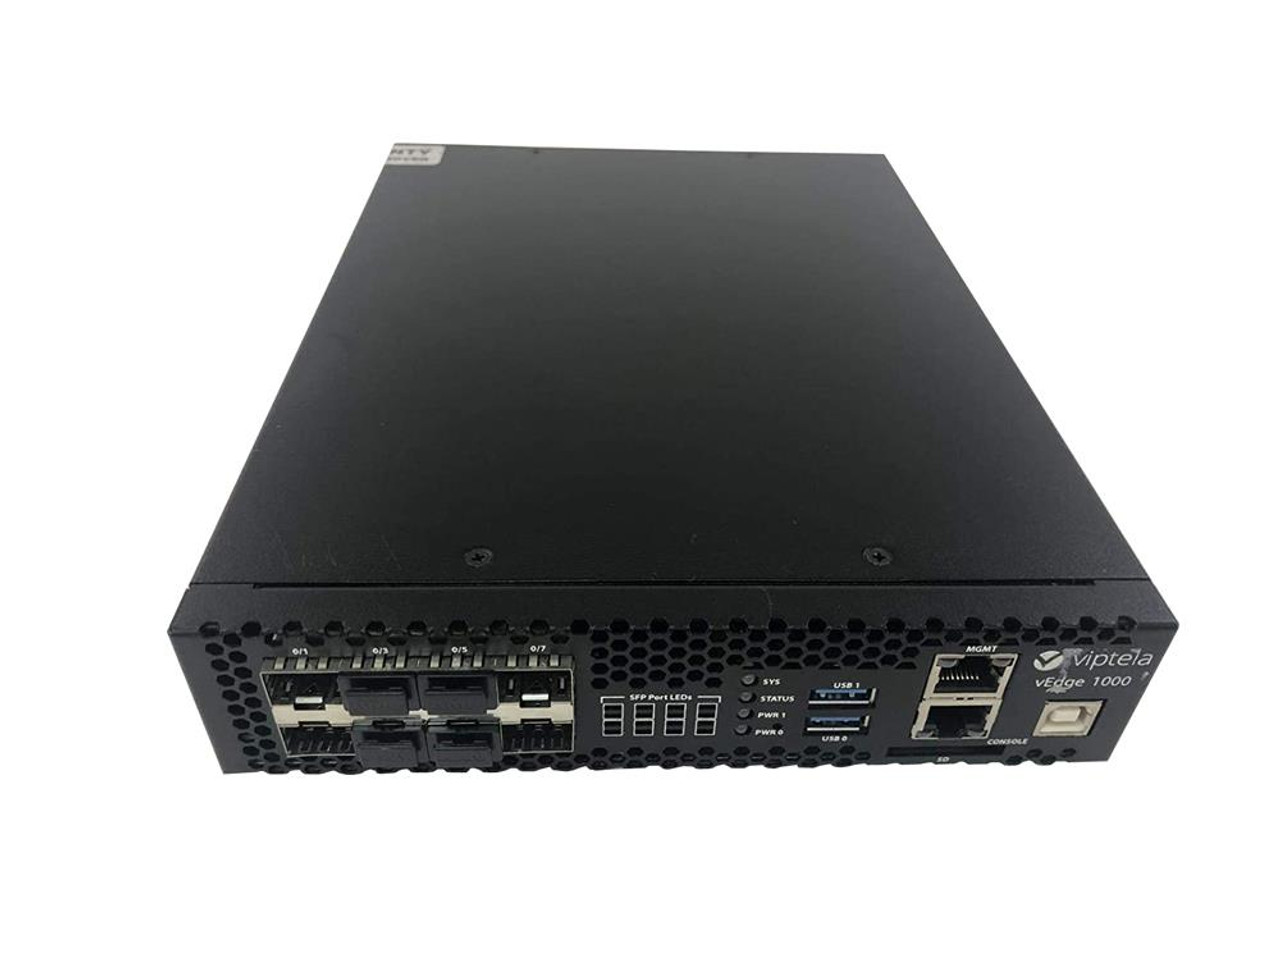 VEDGE-1000-AC-K9 Cisco vEdge-1000 Router Management Port 8 Slots Gigabit Ethernet 1U Rack-mountable (Refurbished)